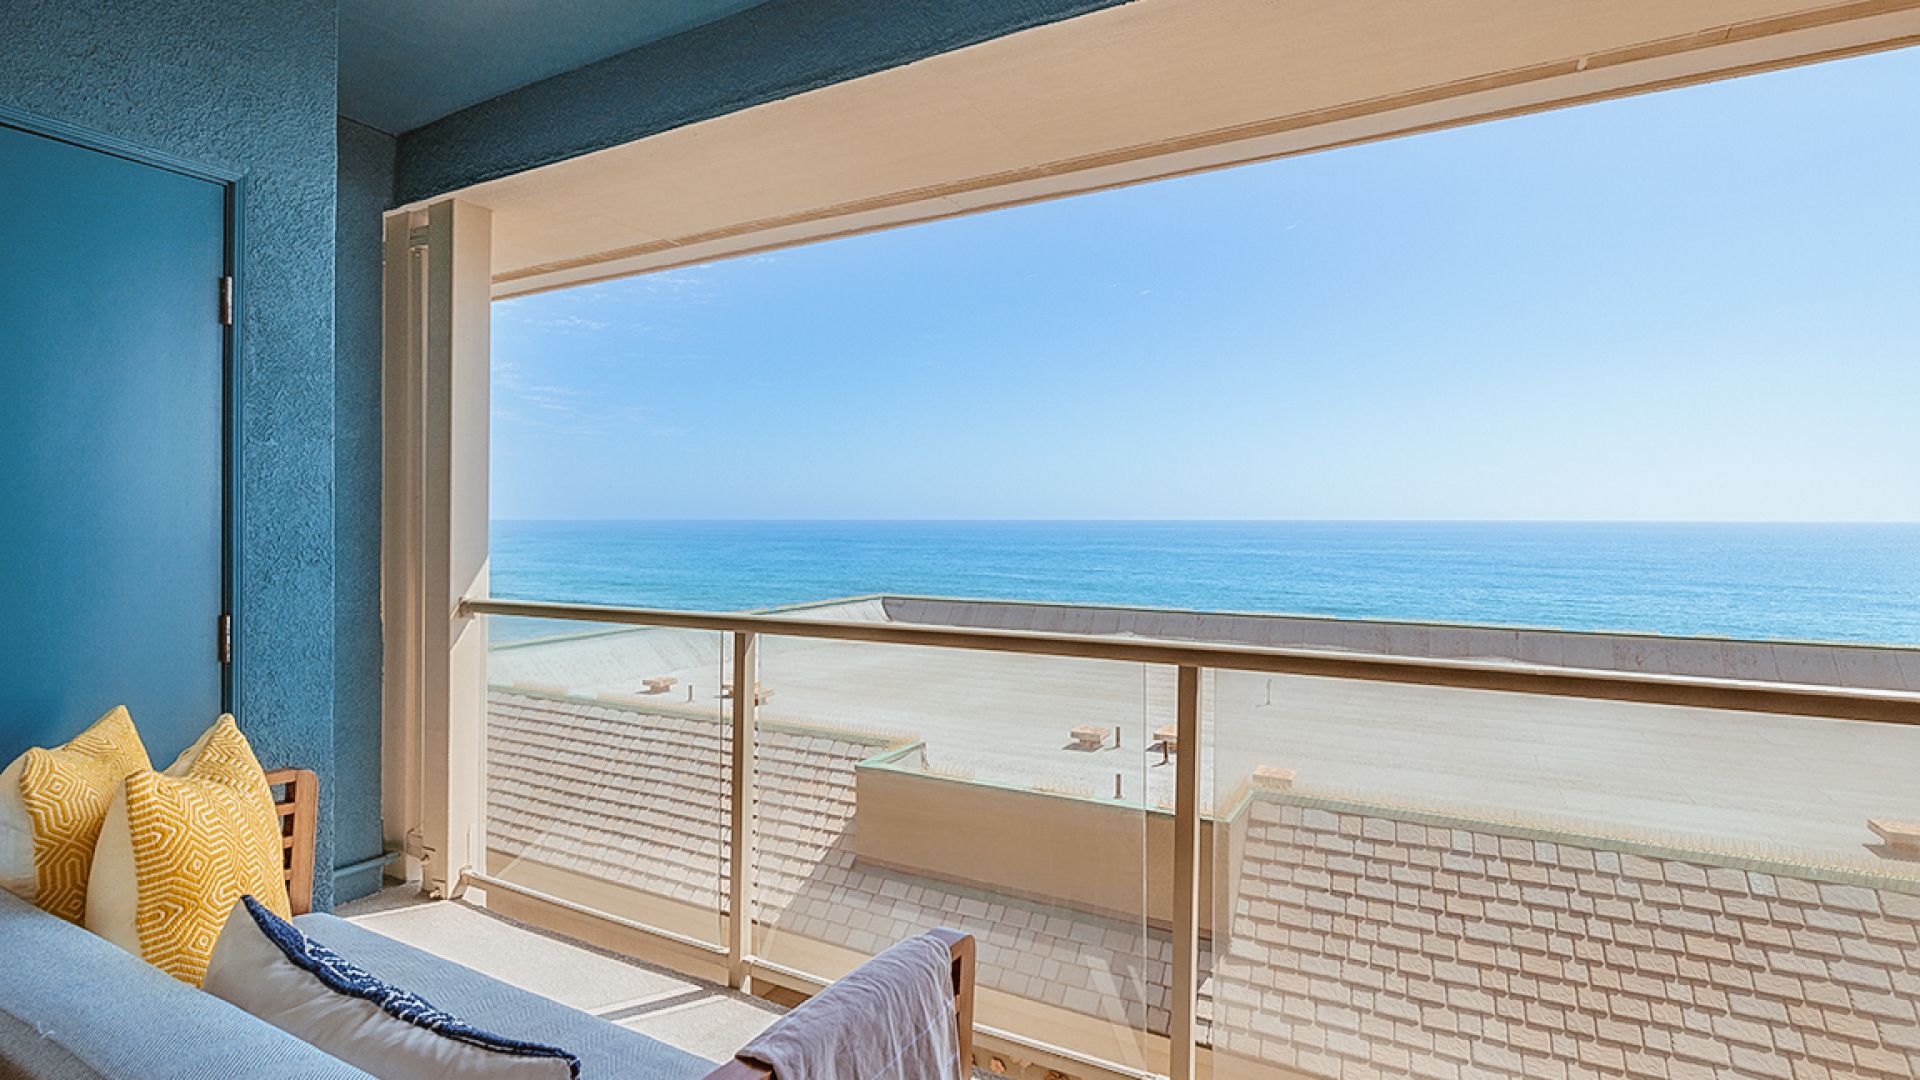 A Balcony Overlooking The Ocean